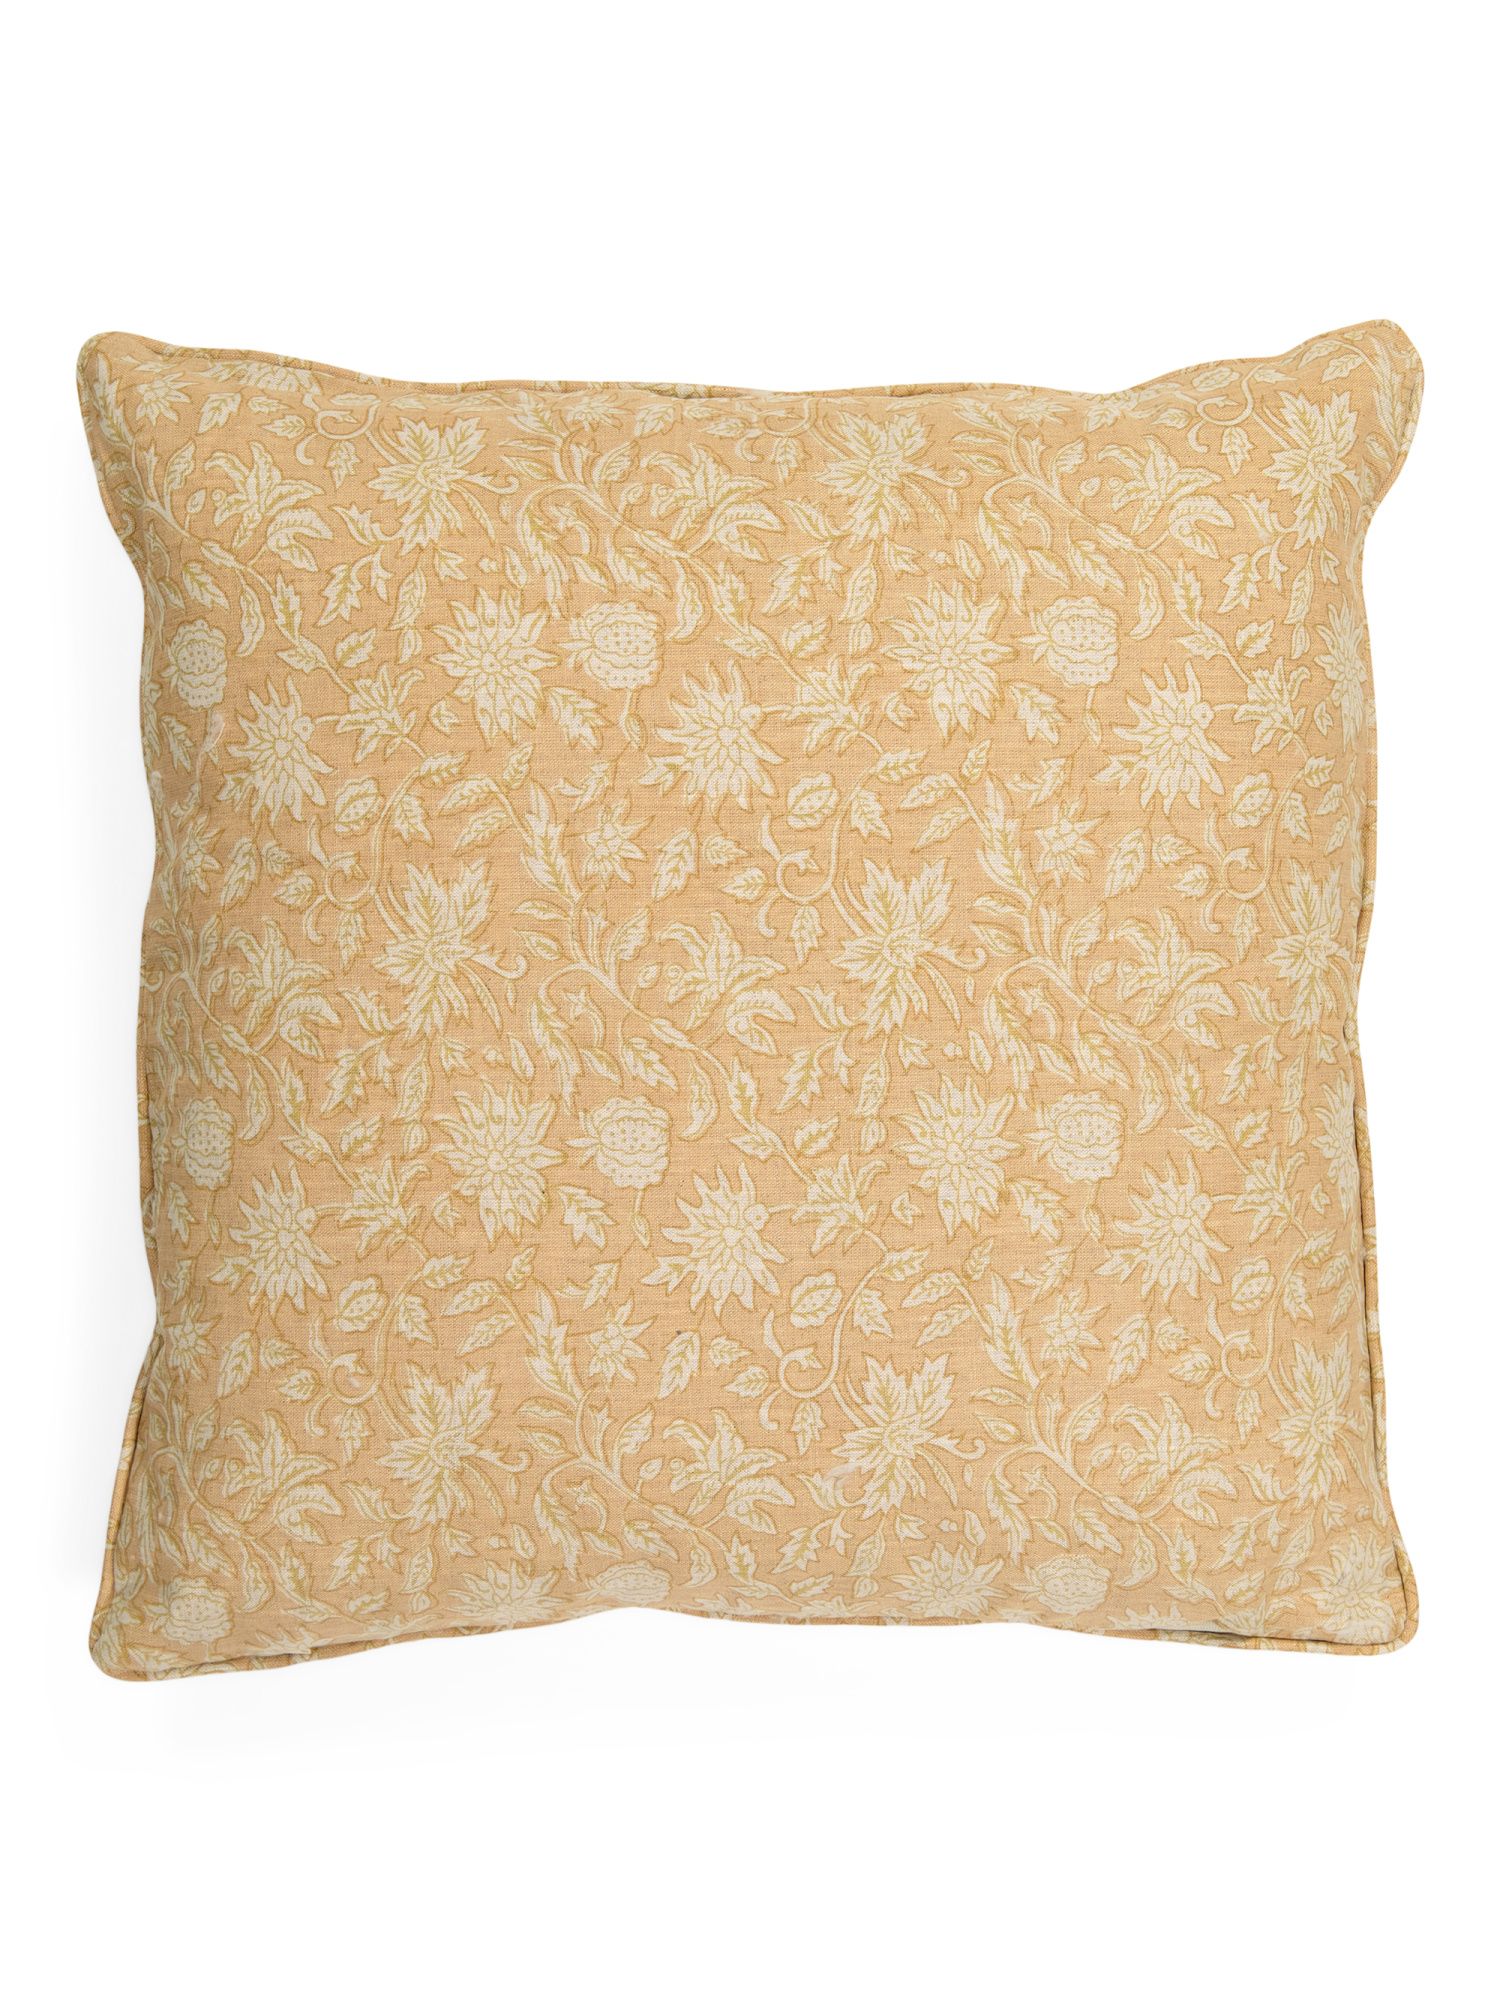 20x20 Linen Printed Pillow | The Global Decor Shop | Marshalls | Marshalls